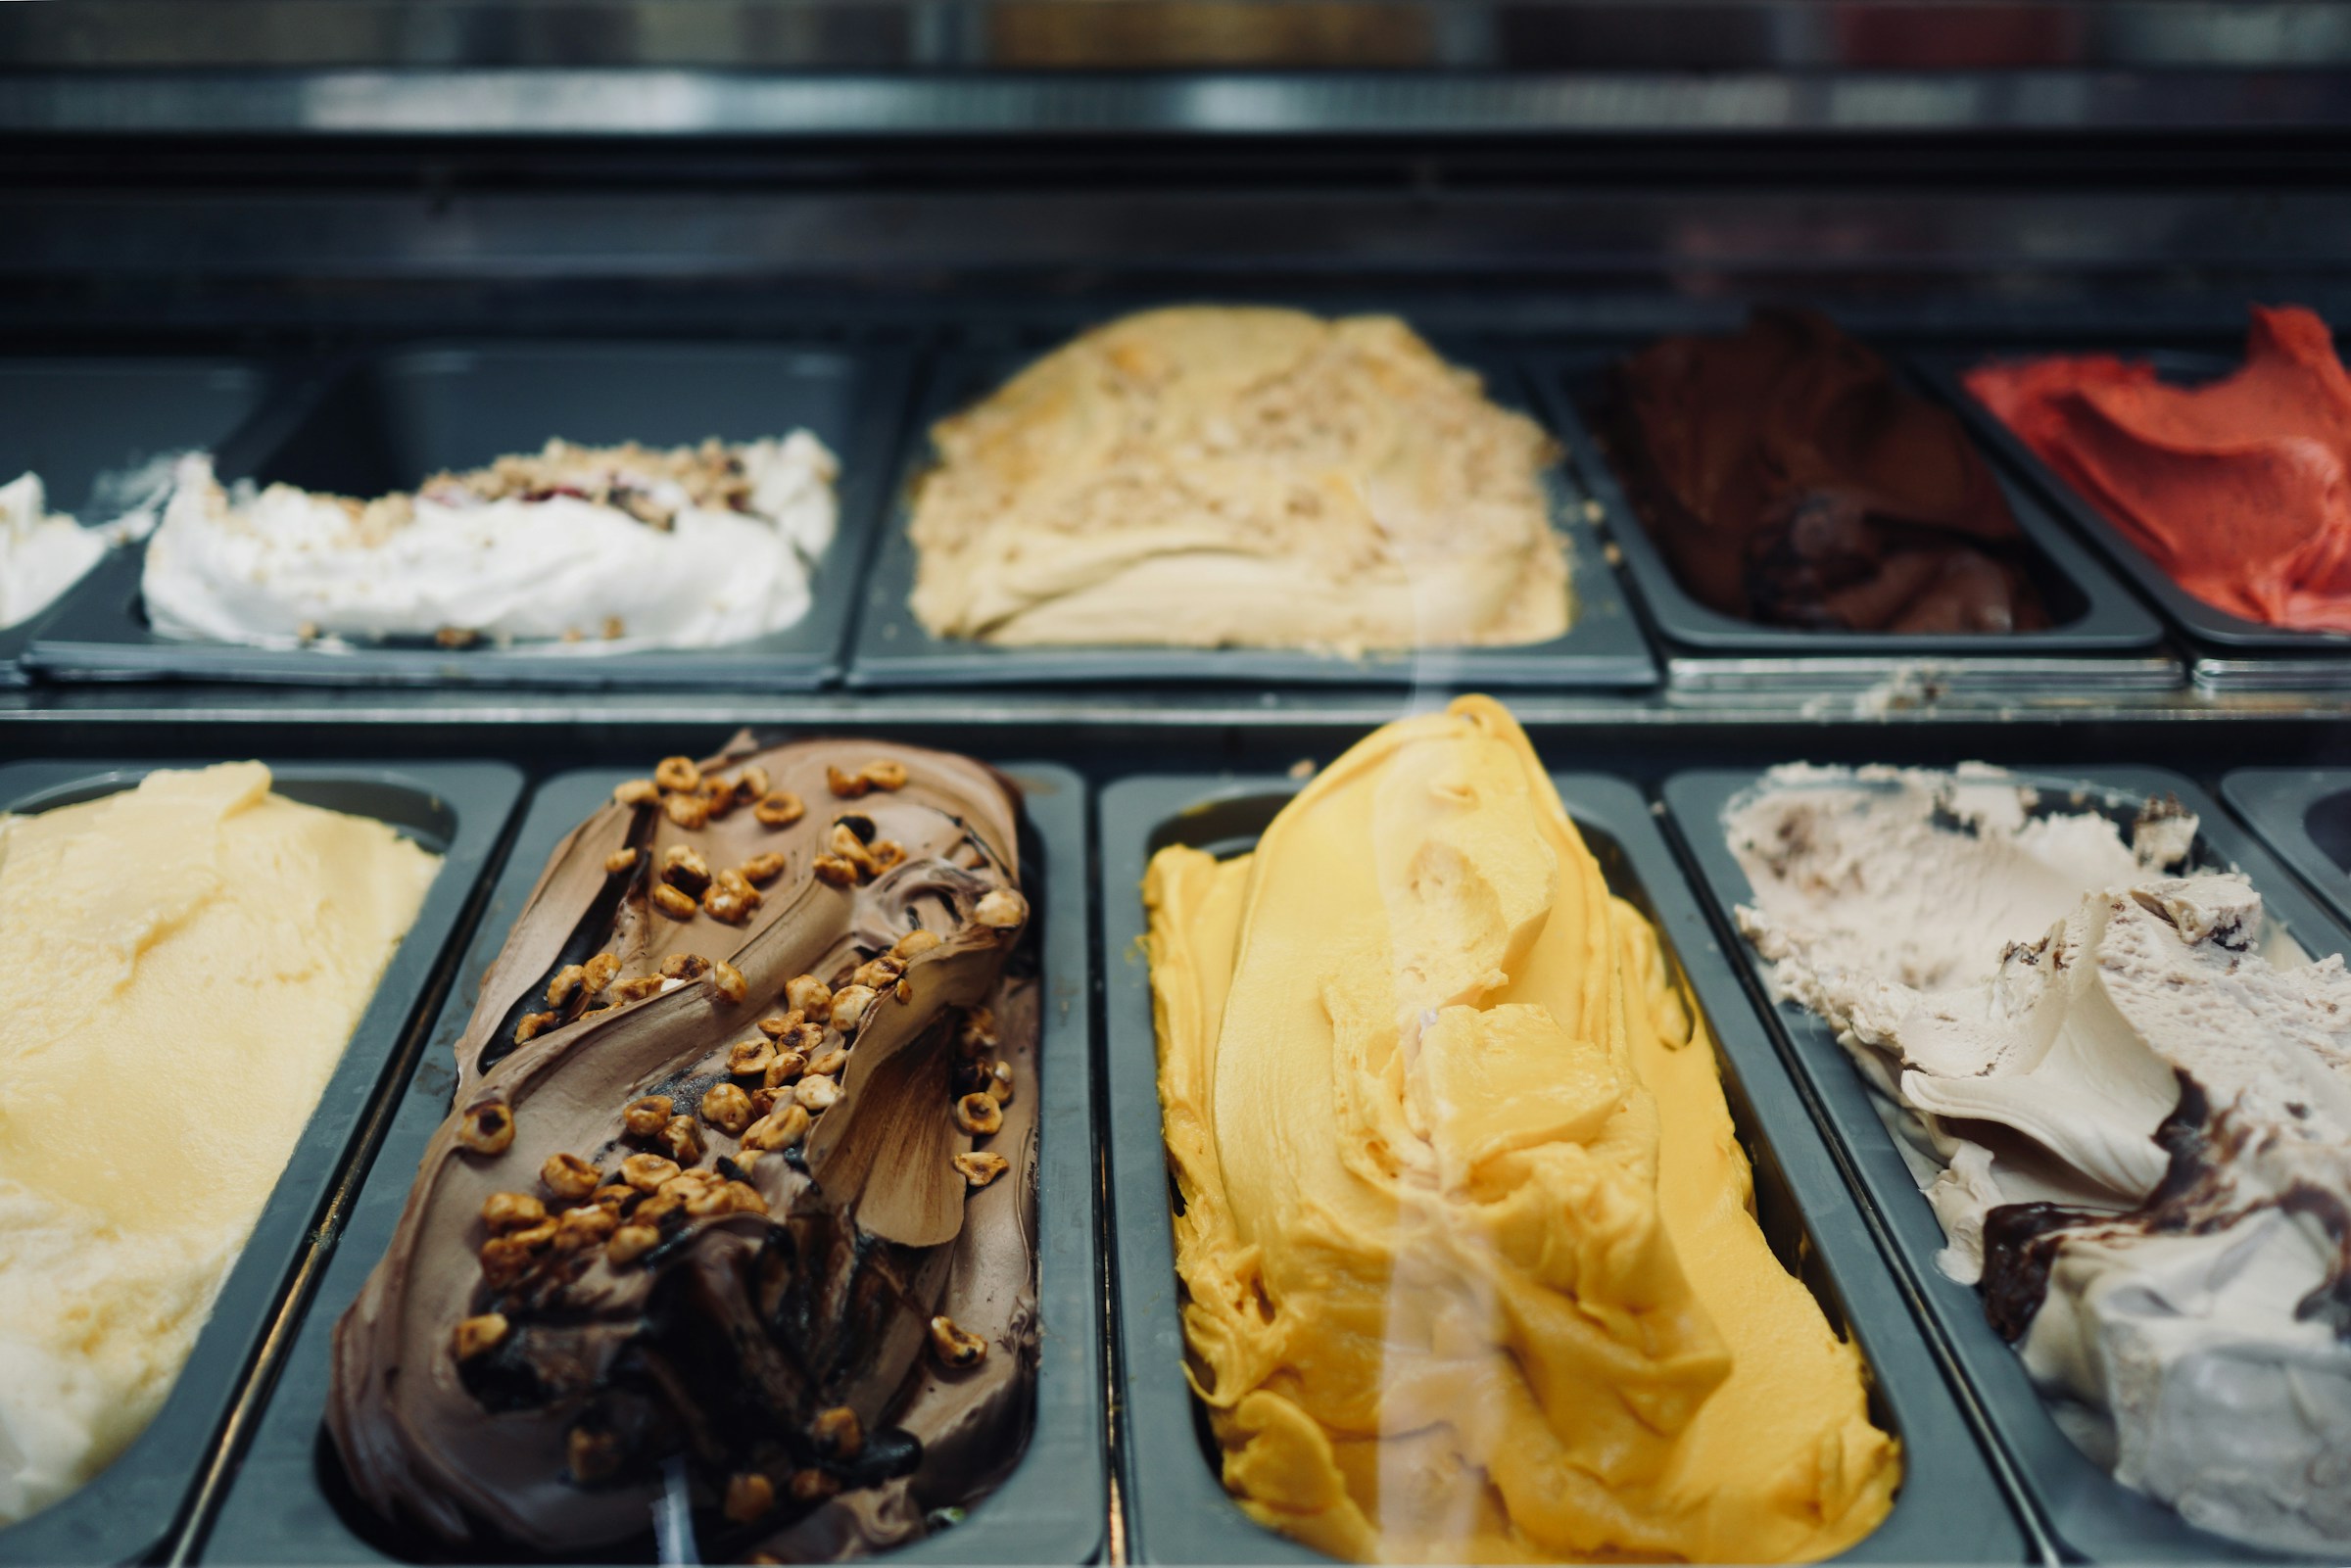 Un congelador de helados | Fuente: Unsplash